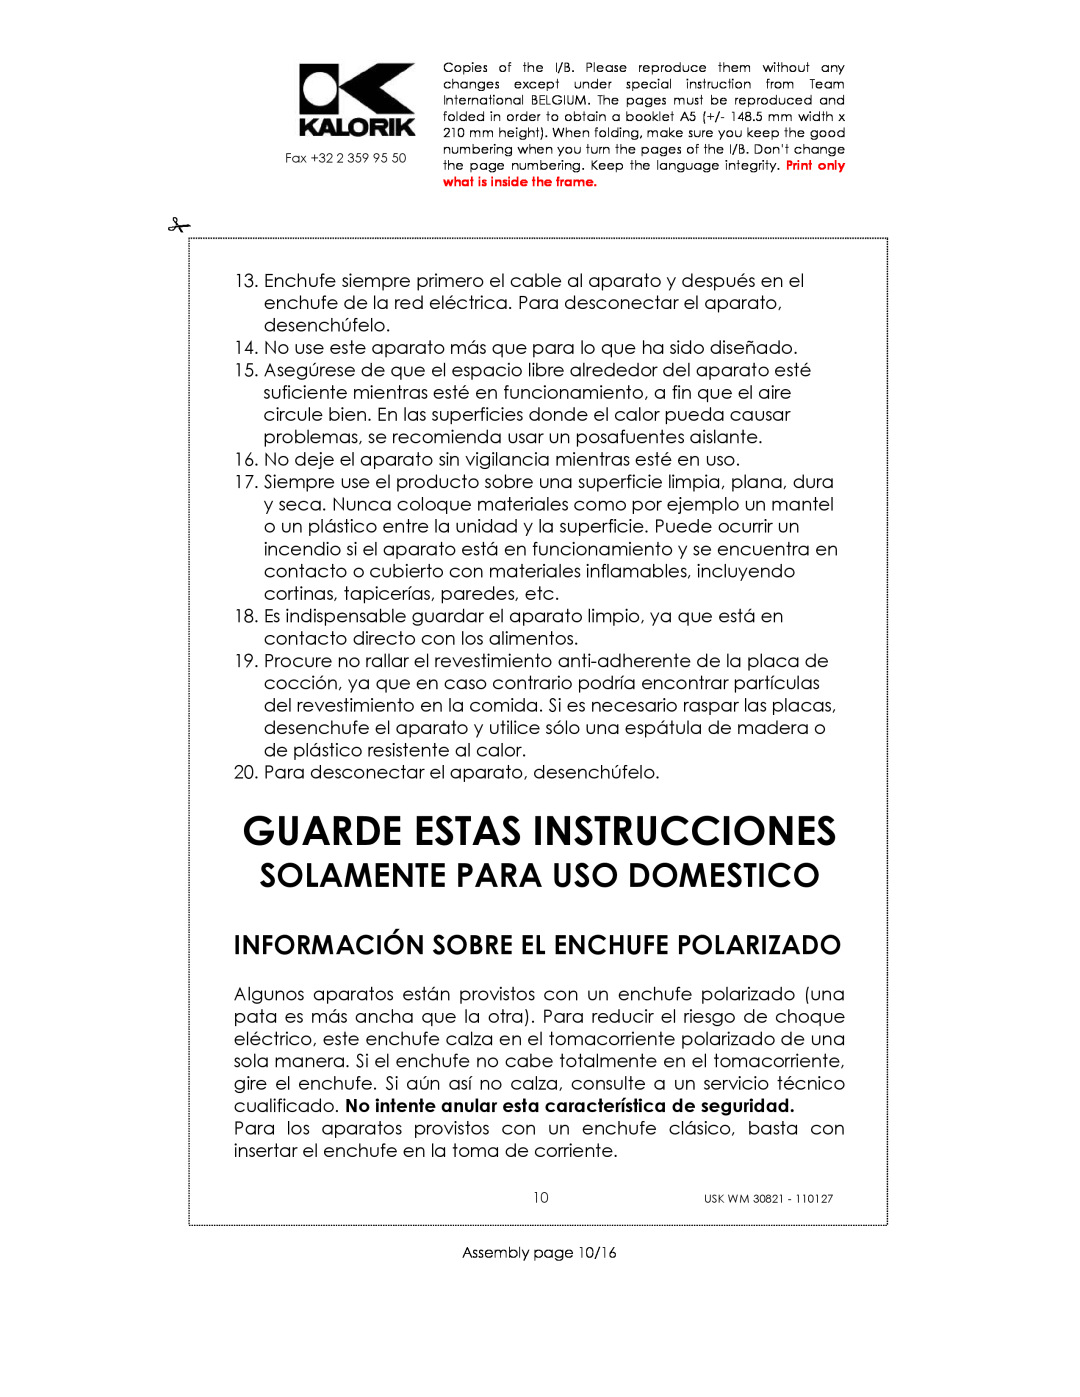 Kalorik USK WM 30821 Guarde Estas Instrucciones, Solamente Para Uso Domestico, Información Sobre El Enchufe Polarizado 